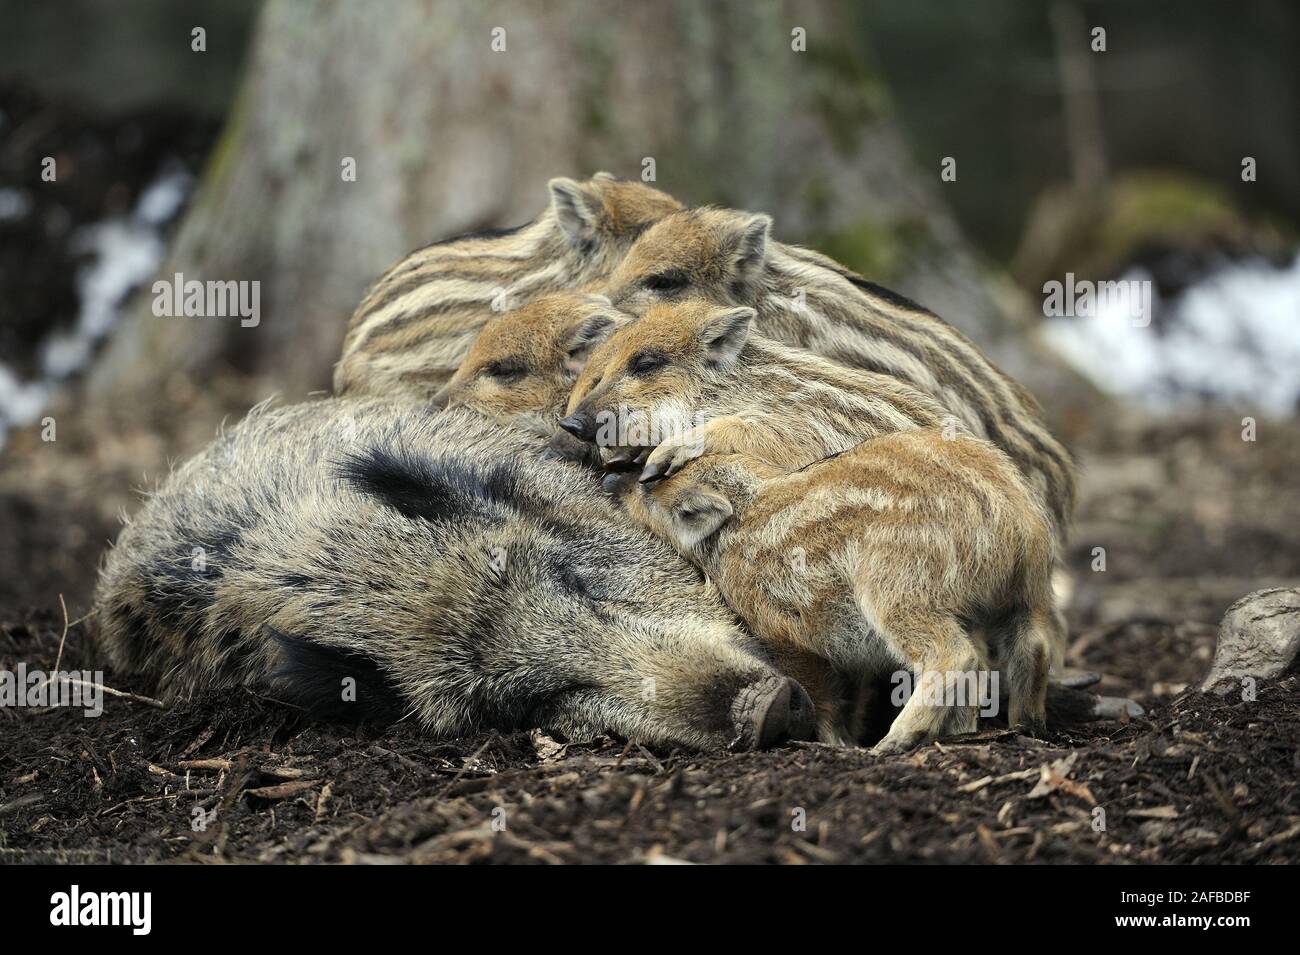 Wildschwein, Sus scrofa, frischlinge saeugen bei Mutter, Bache Stock Photo